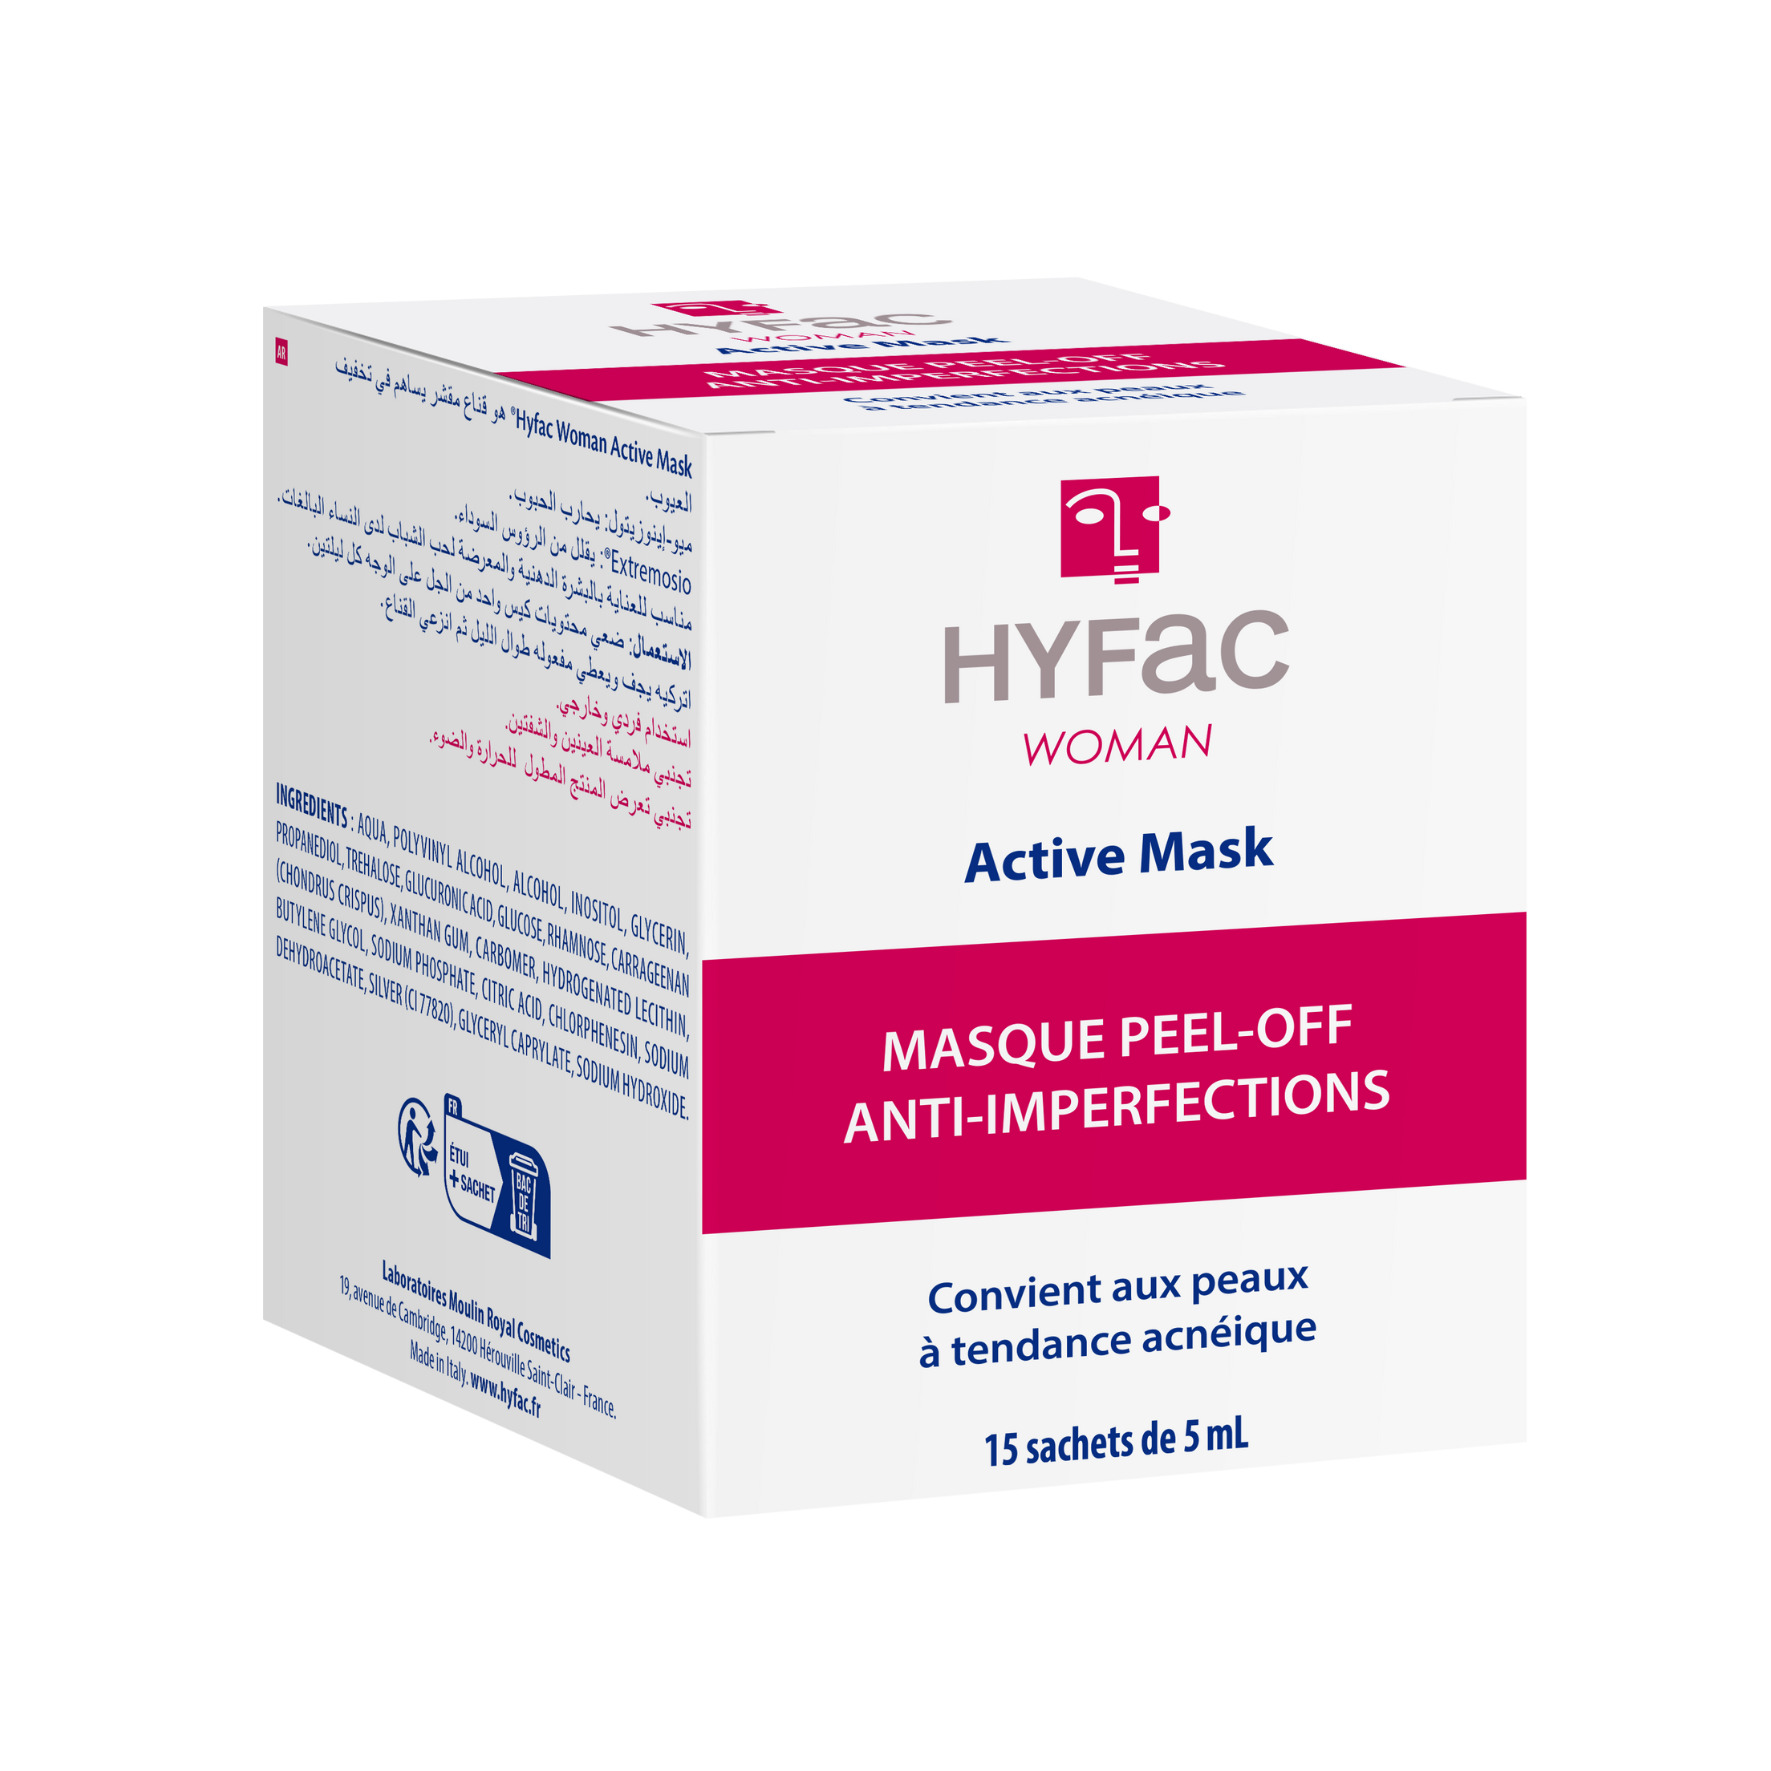 HYFAC WOMAN Active Mask traitement acné femme adulte